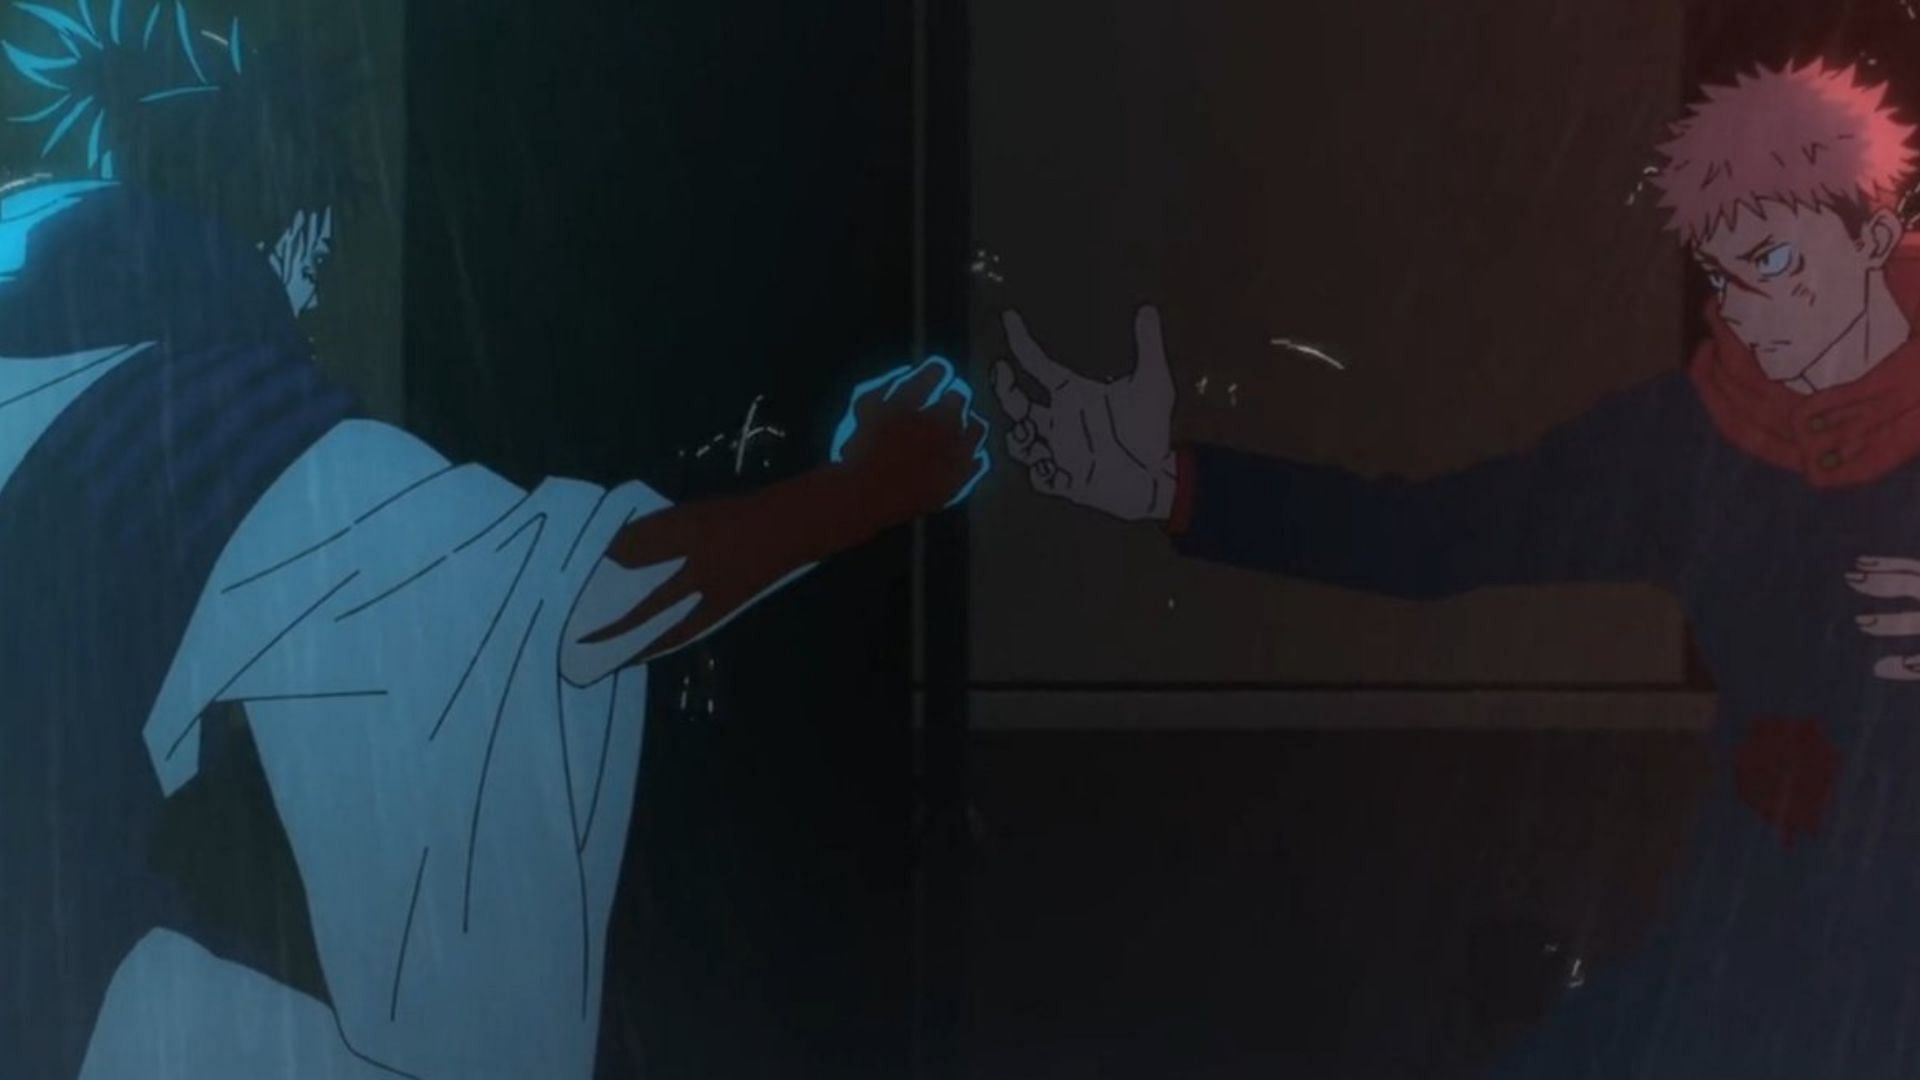 Choso and Yuji as shown in Jujutsu Kaisen anime (Image via Studio MAPPA)